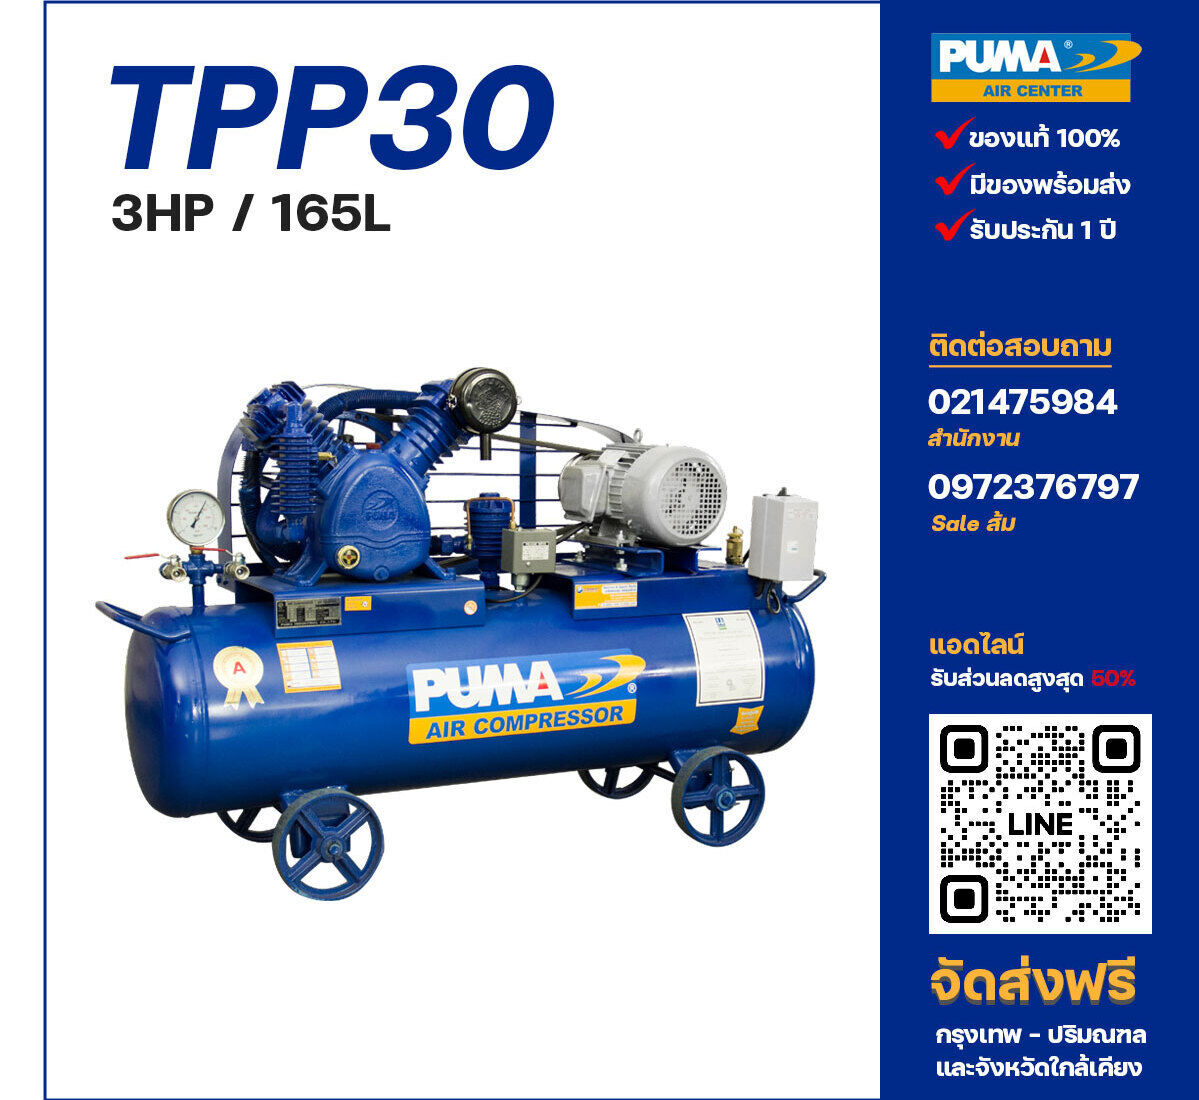 ปั๊มลมพูม่าแรงดันสูง PUMA Two-Stage TPP-30 ปั๊มลมลูกสูบ ขนาด 2 สูบ 3 แรงม้า 165 ลิตร PUMA พร้อมมอเตอร์ PUMA ไฟ 220V/380V ส่งฟรี กรุงเทพฯ-ปริมณฑล รับประกัน 1 ปี